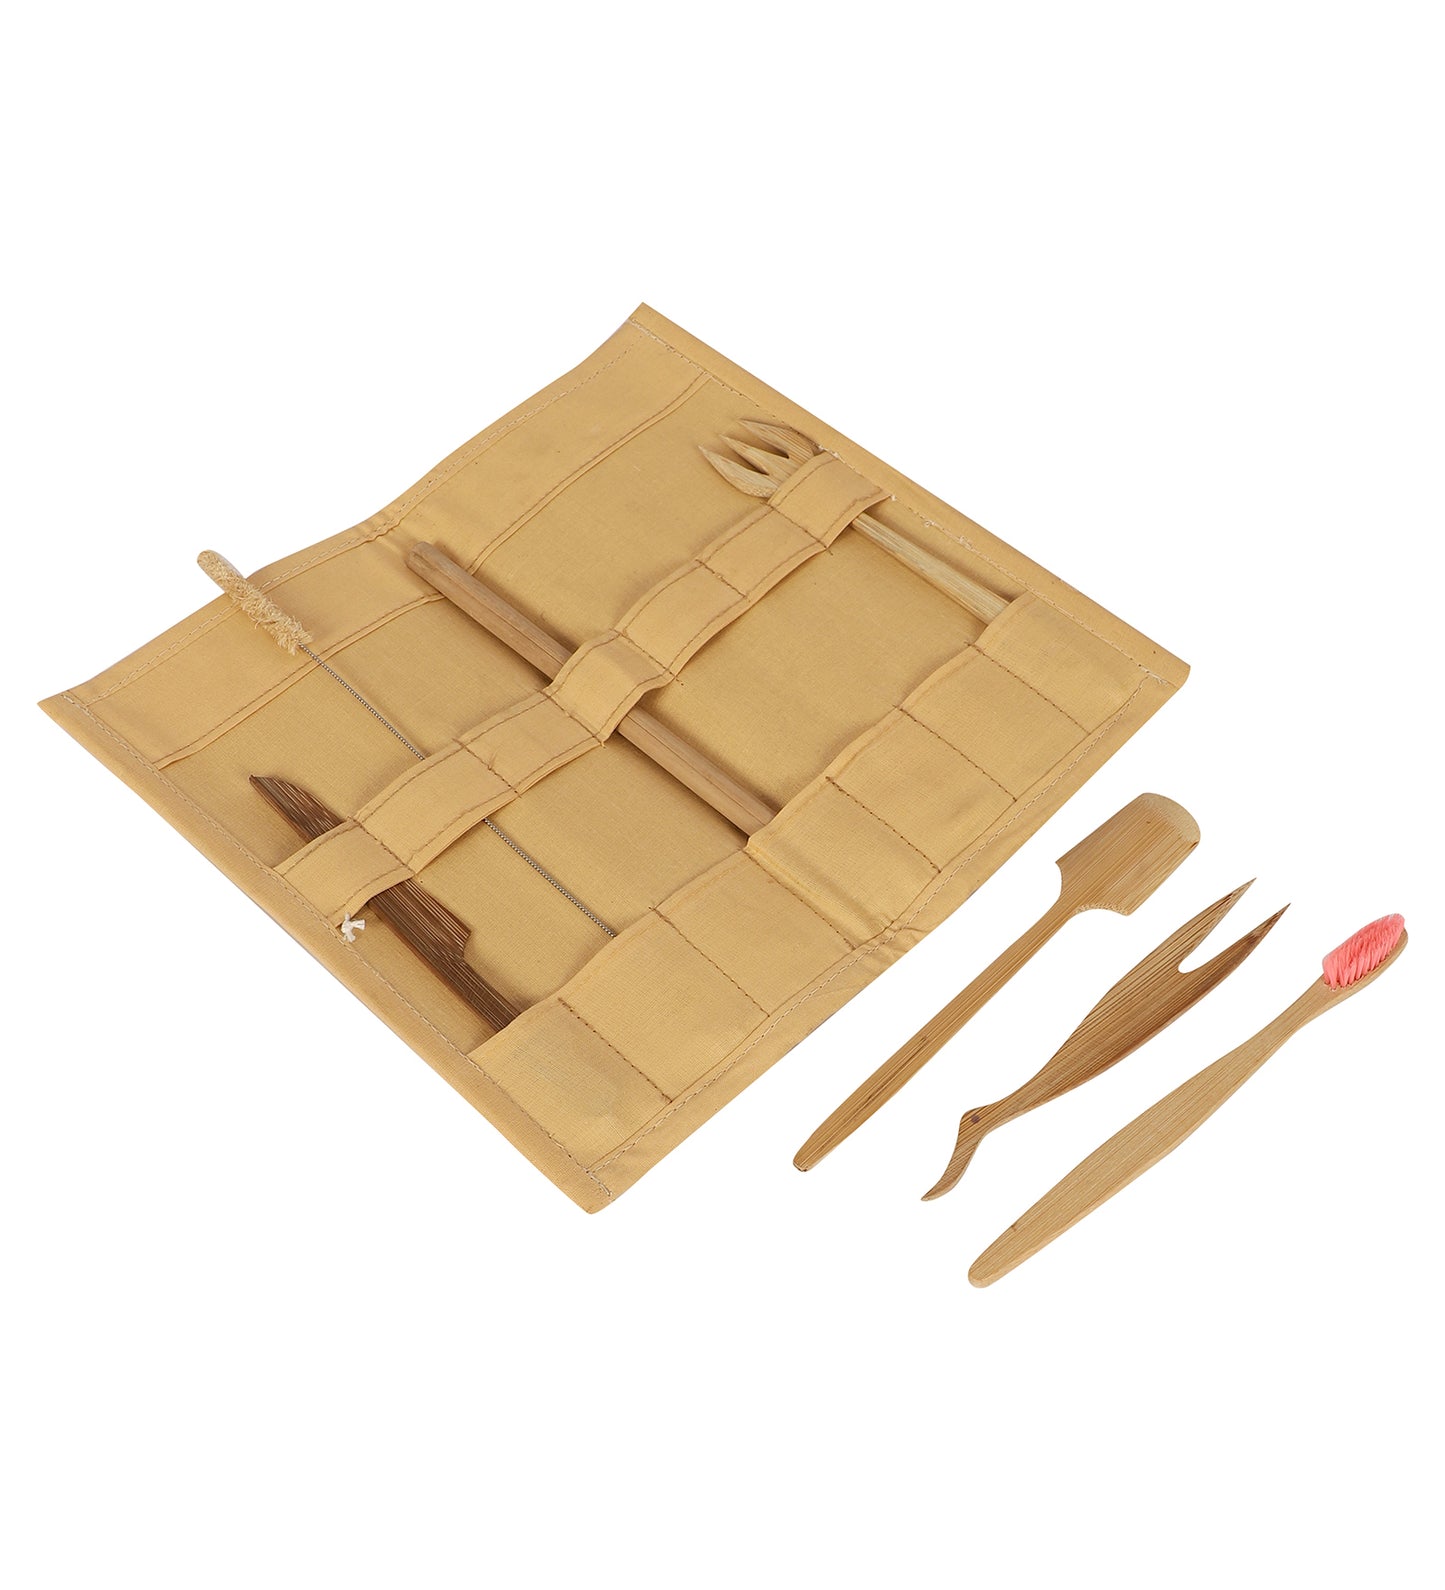 Set de utilidad de bambú con bolsa. Incluye Cepillo de Dientes, Pajita, Cubiertos y Limpiador.